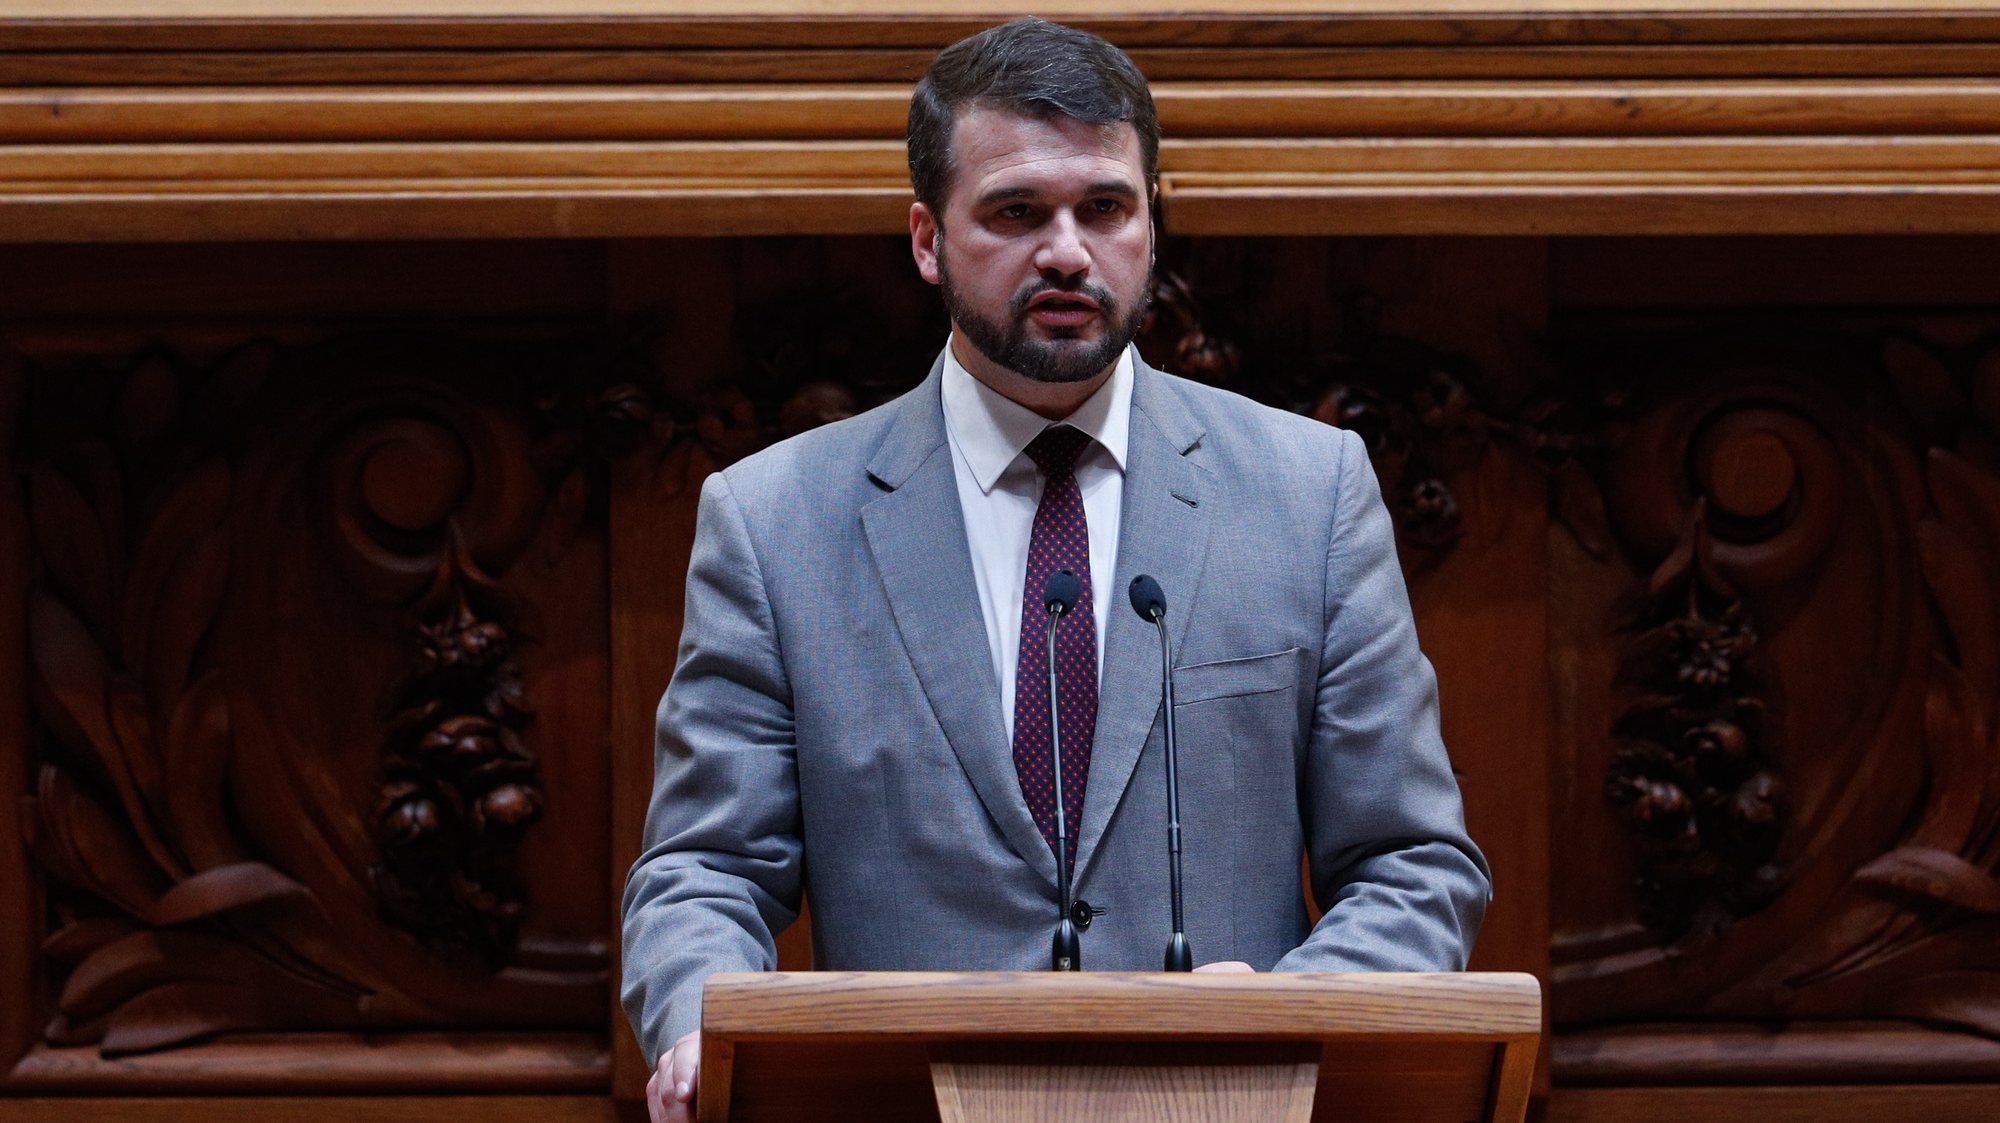 O deputado do Partido Socialista (PS), João Paulo Correia, intervém durante o debate na Assembleia da República, em Lisboa, 14 de outubro de 2020. ANTÓNIO COTRIM/LUSA